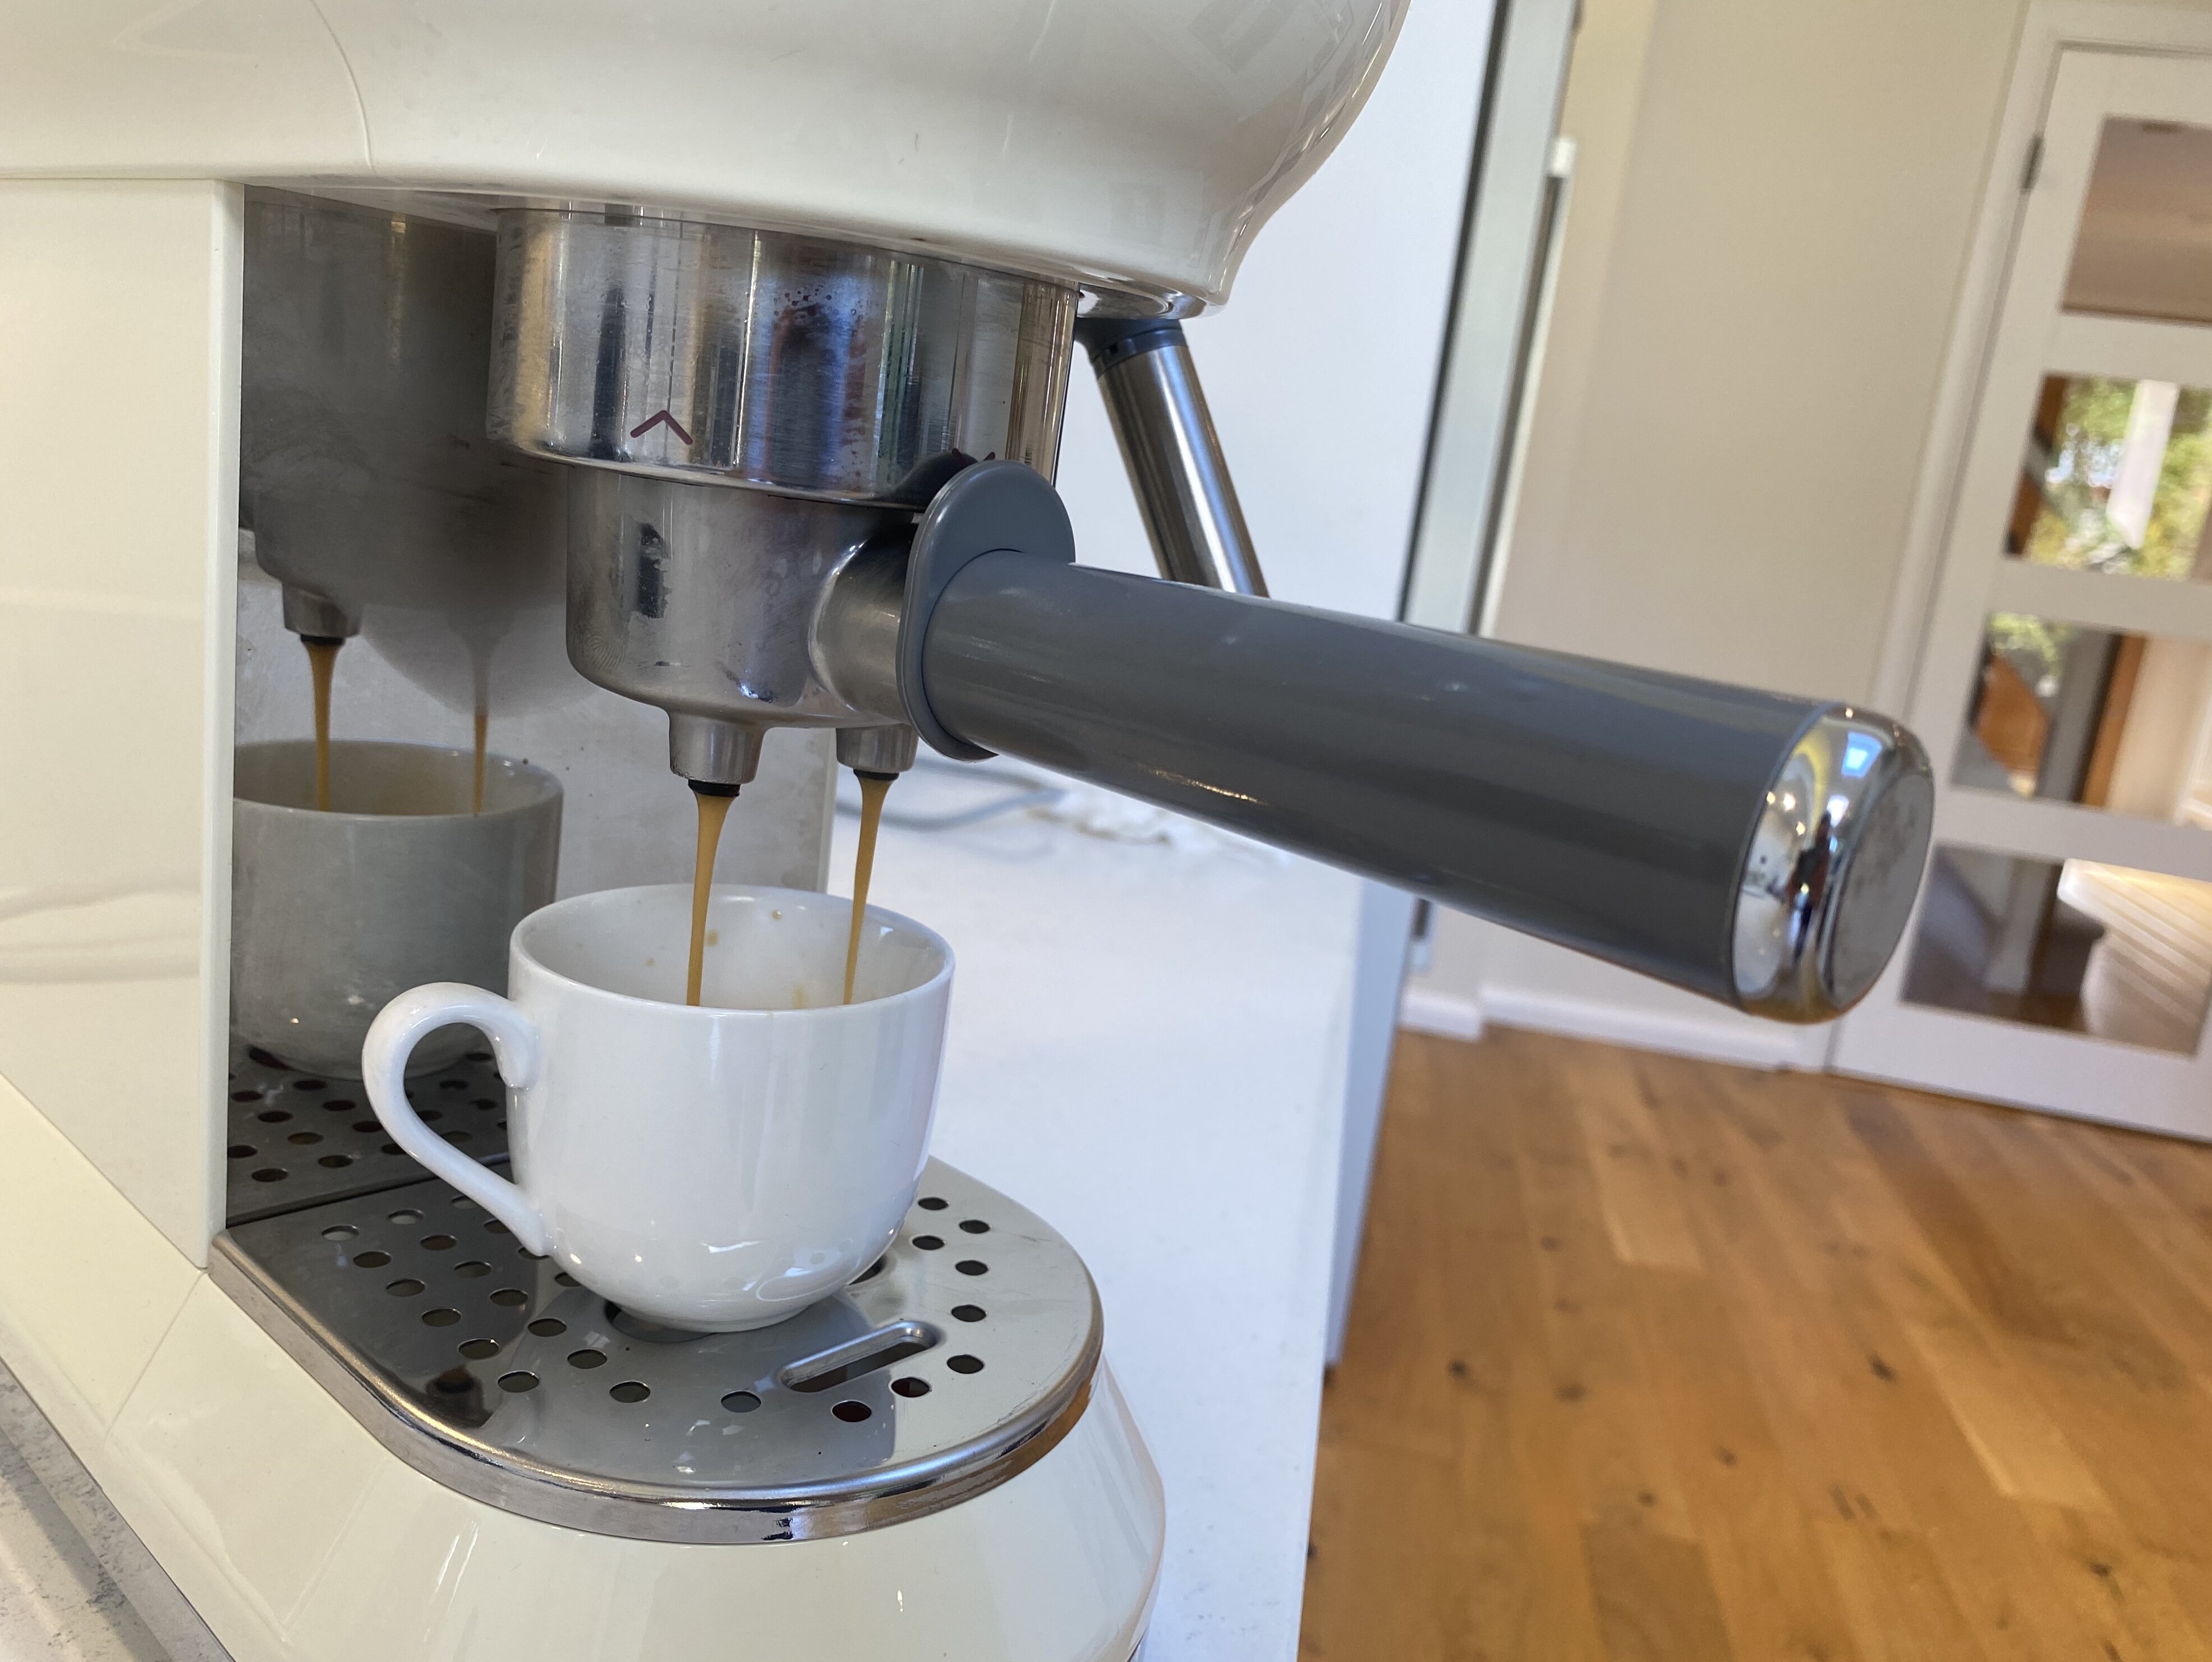 Smeg ECF01 Espresso Coffee Machine review